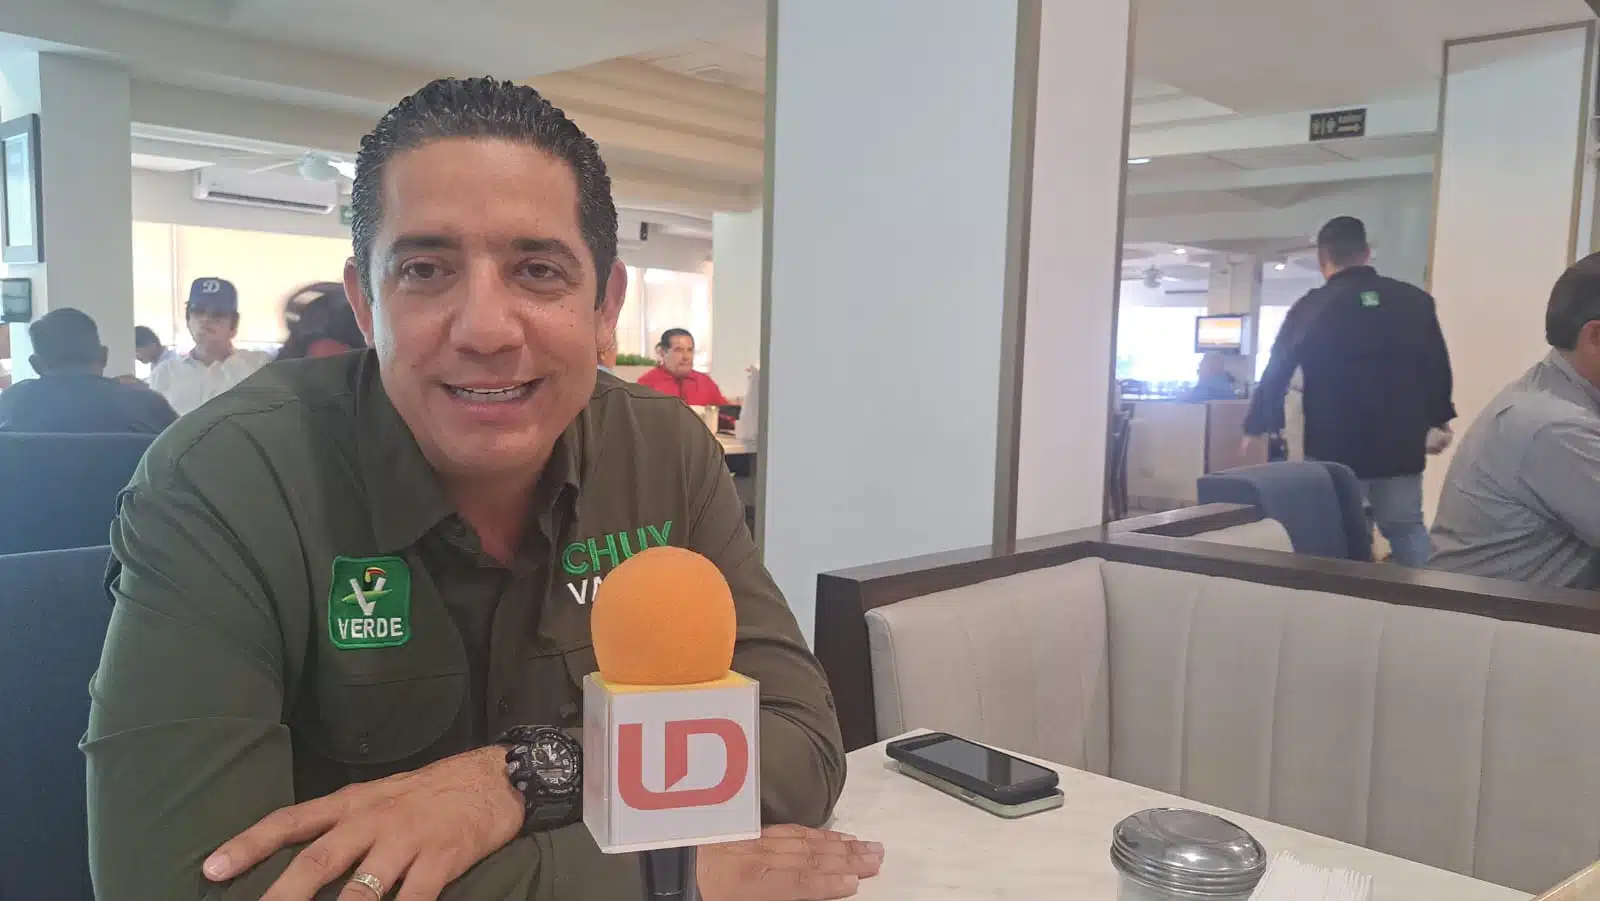 El candidato al Senado de la República, Jesús Valdés, declaró que irán por una vuelta más por el estado